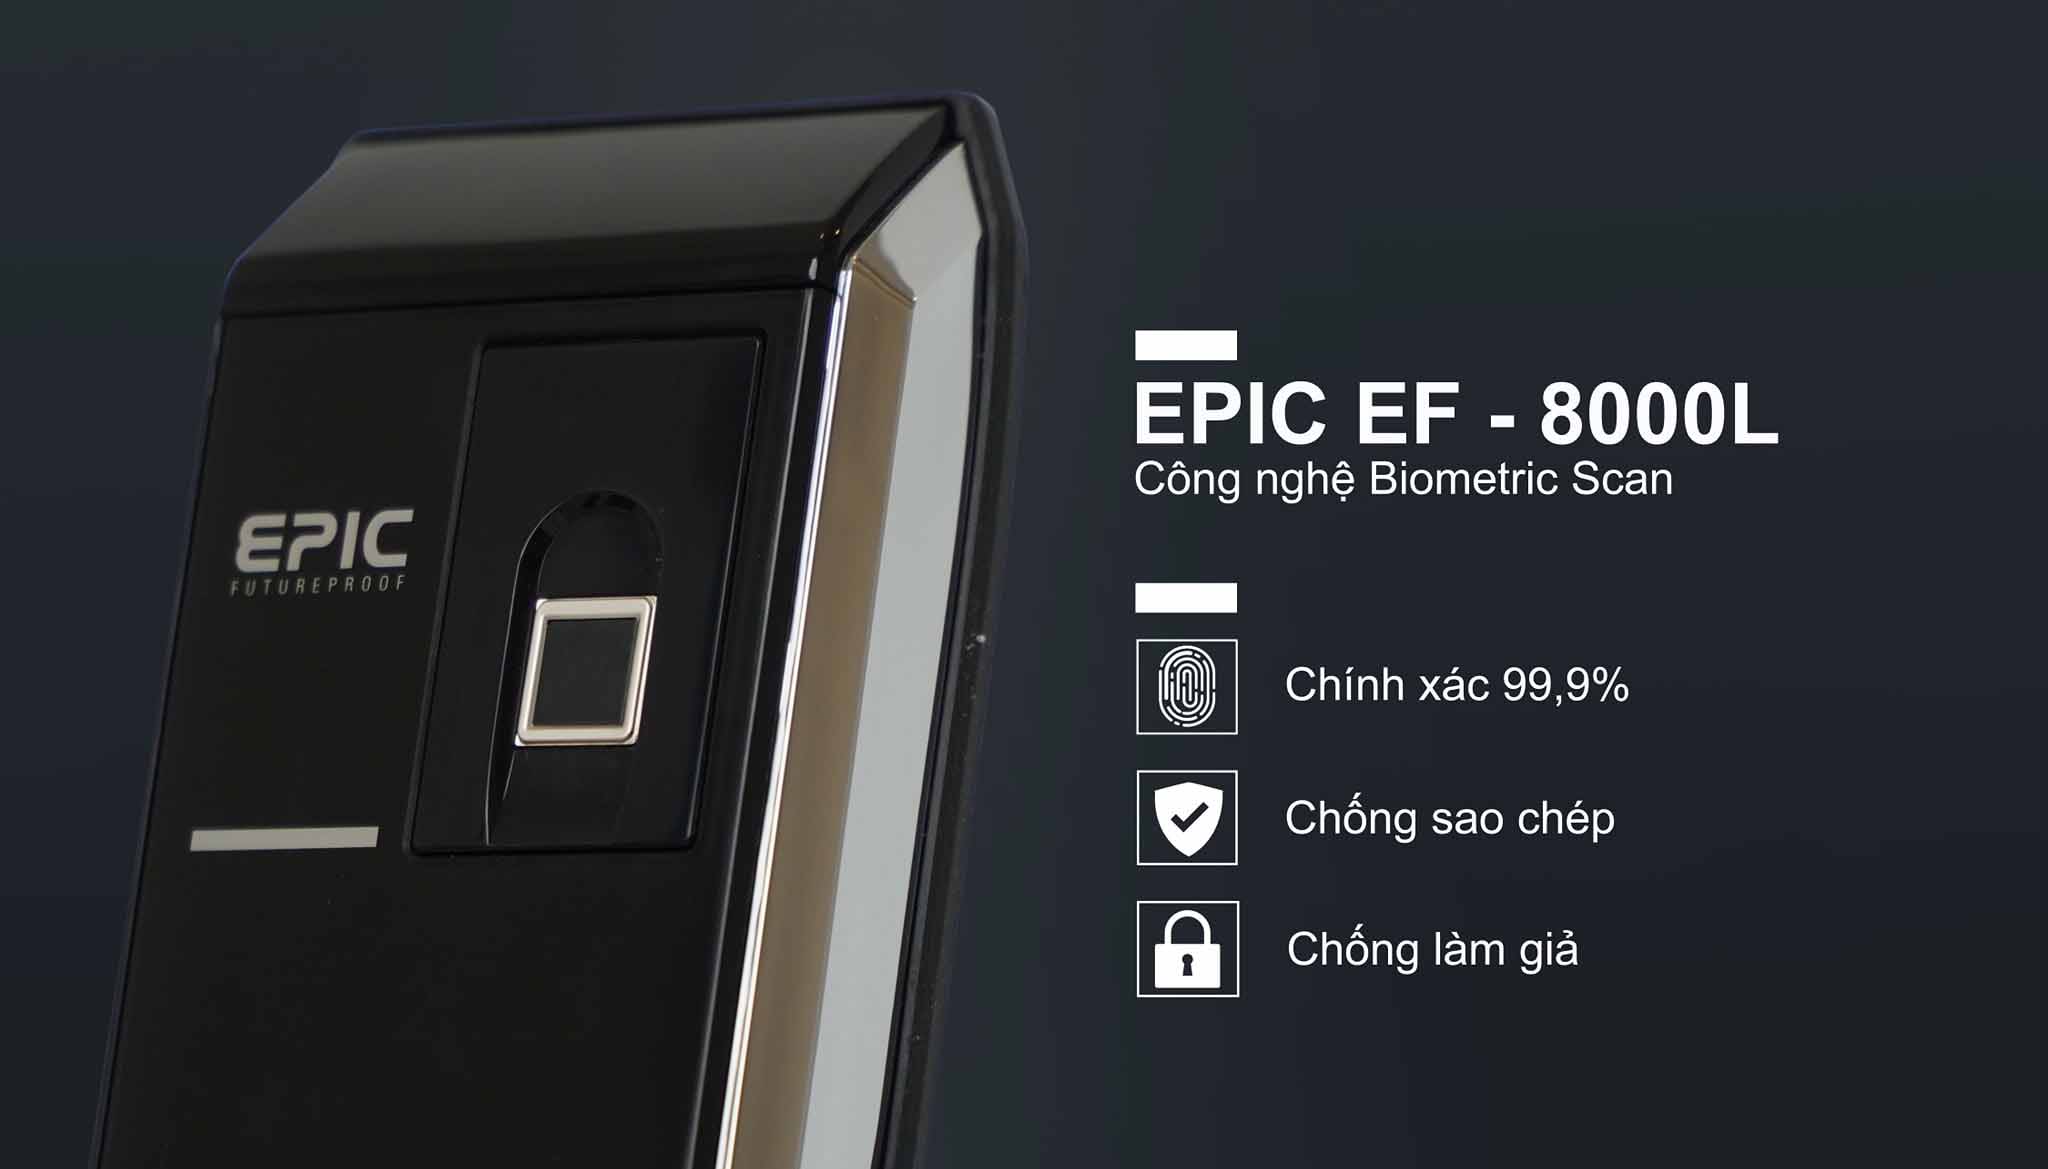 Công nghệ hiện đại của khóa của khóa vân tay Epic EF-8000L